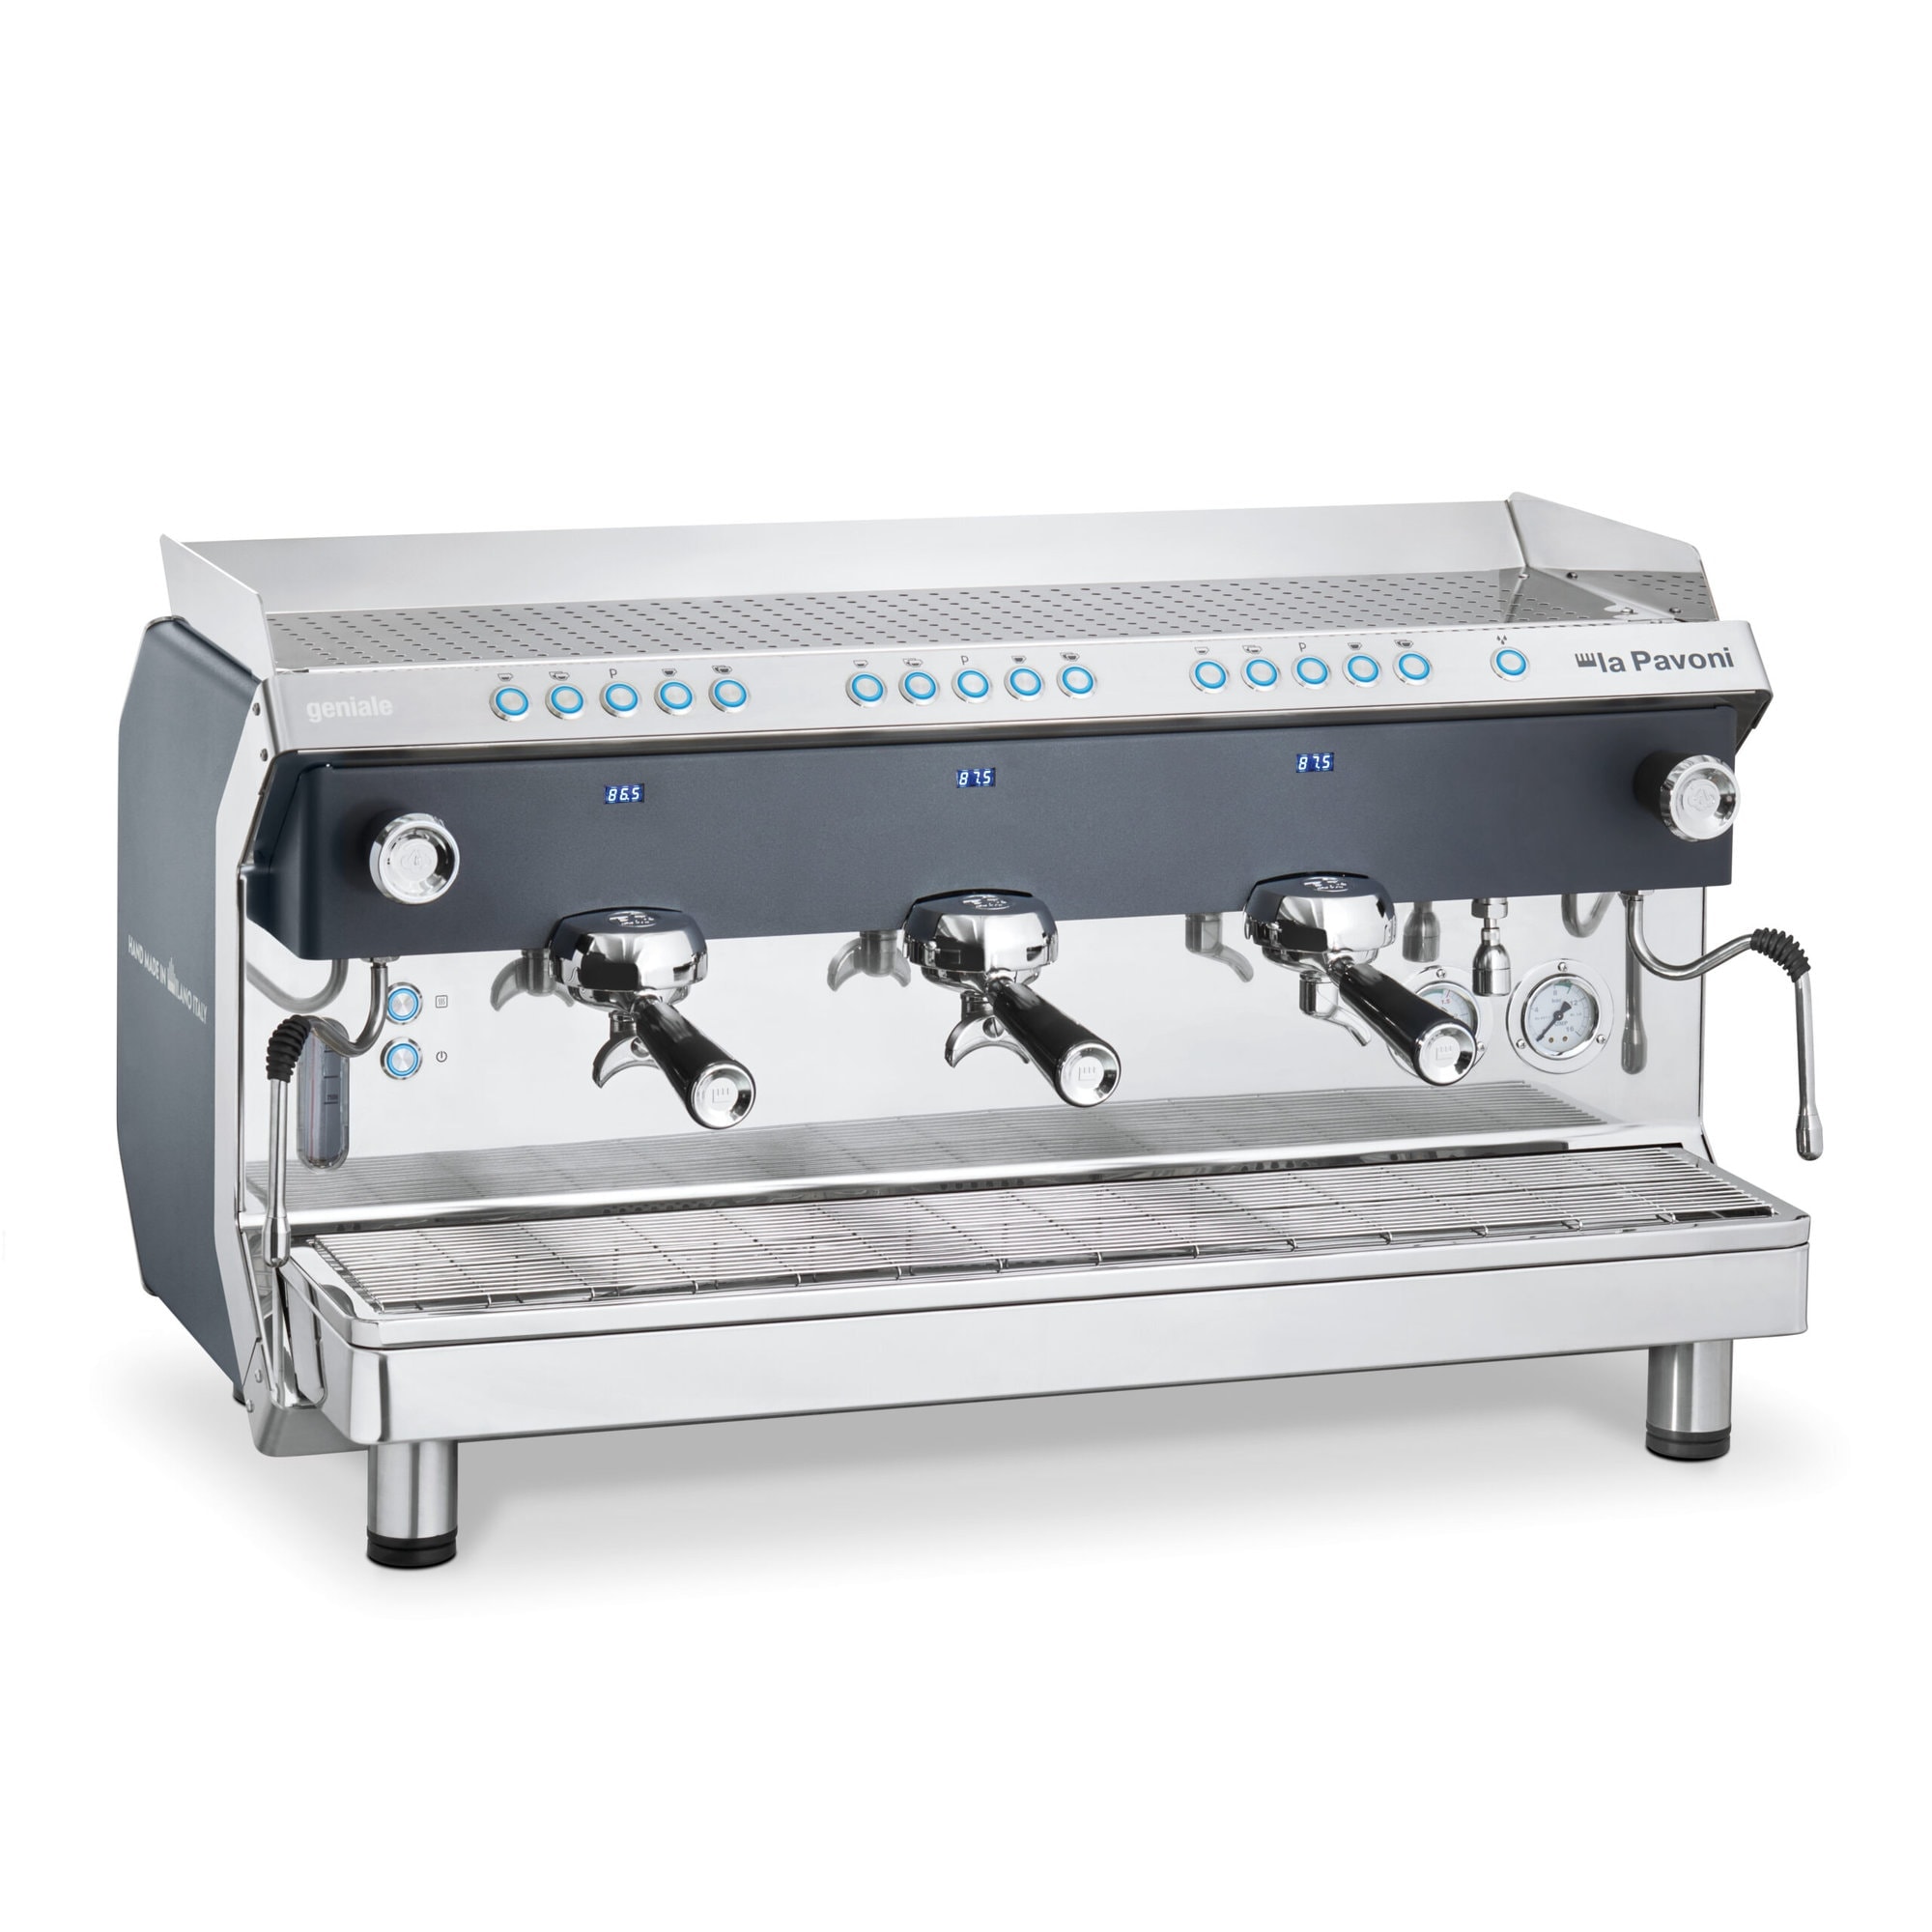 Automatyczny ekspres do kawy, 3-grupowy grafitowy, moc: 5465 W, wymiary (SxGxW): 914x515x550 mm